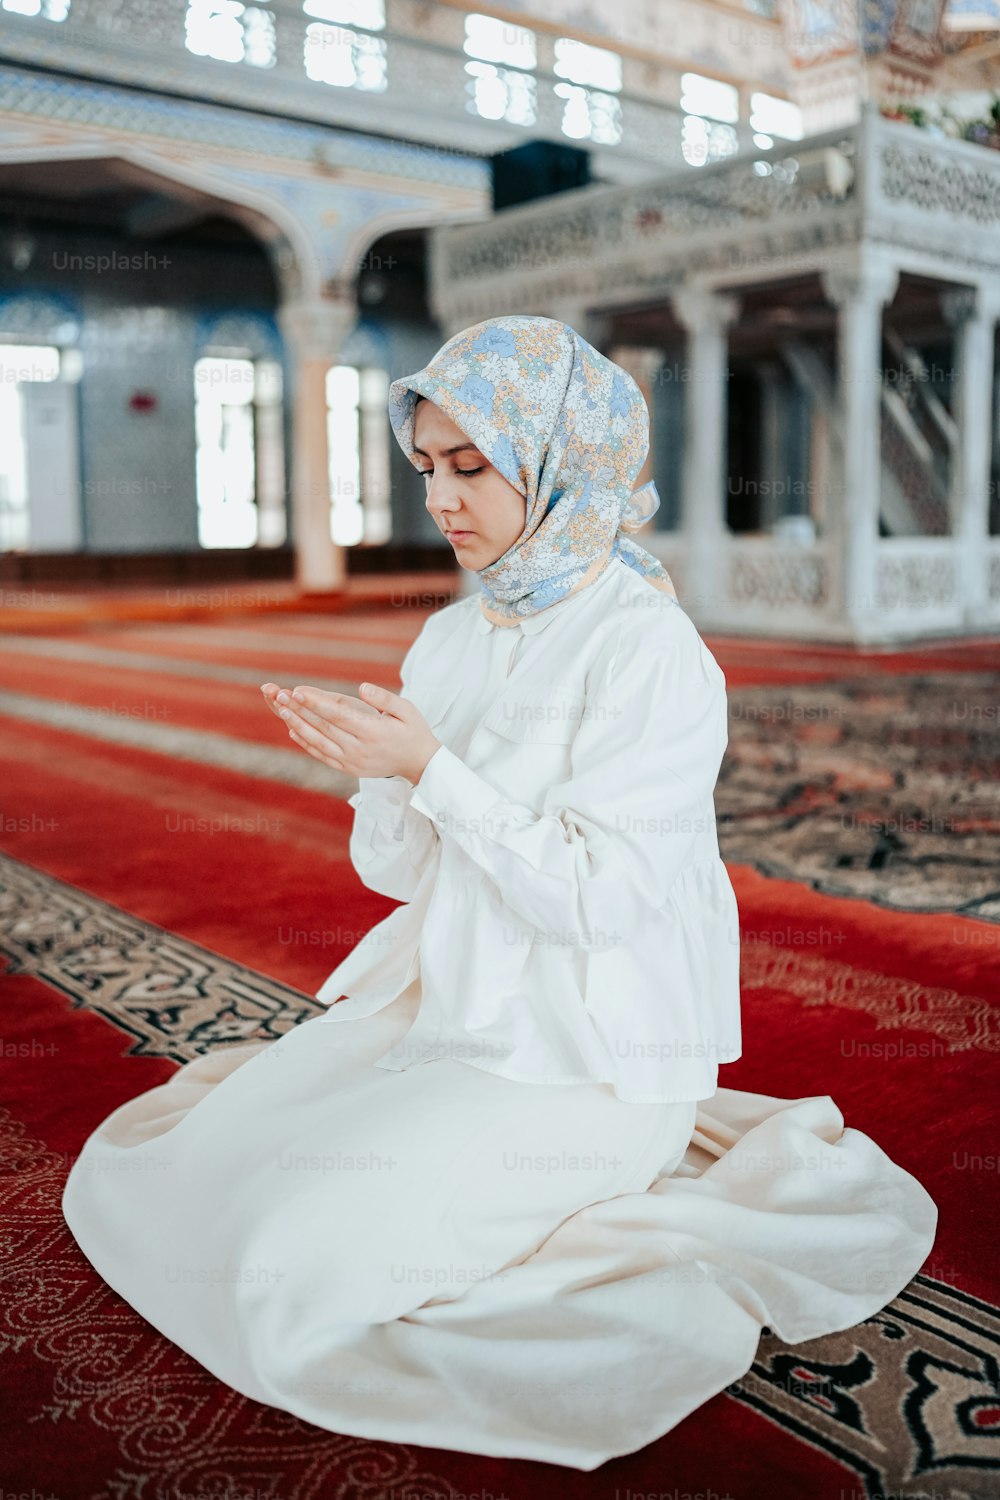 Una mujer con un vestido blanco sentada en una alfombra